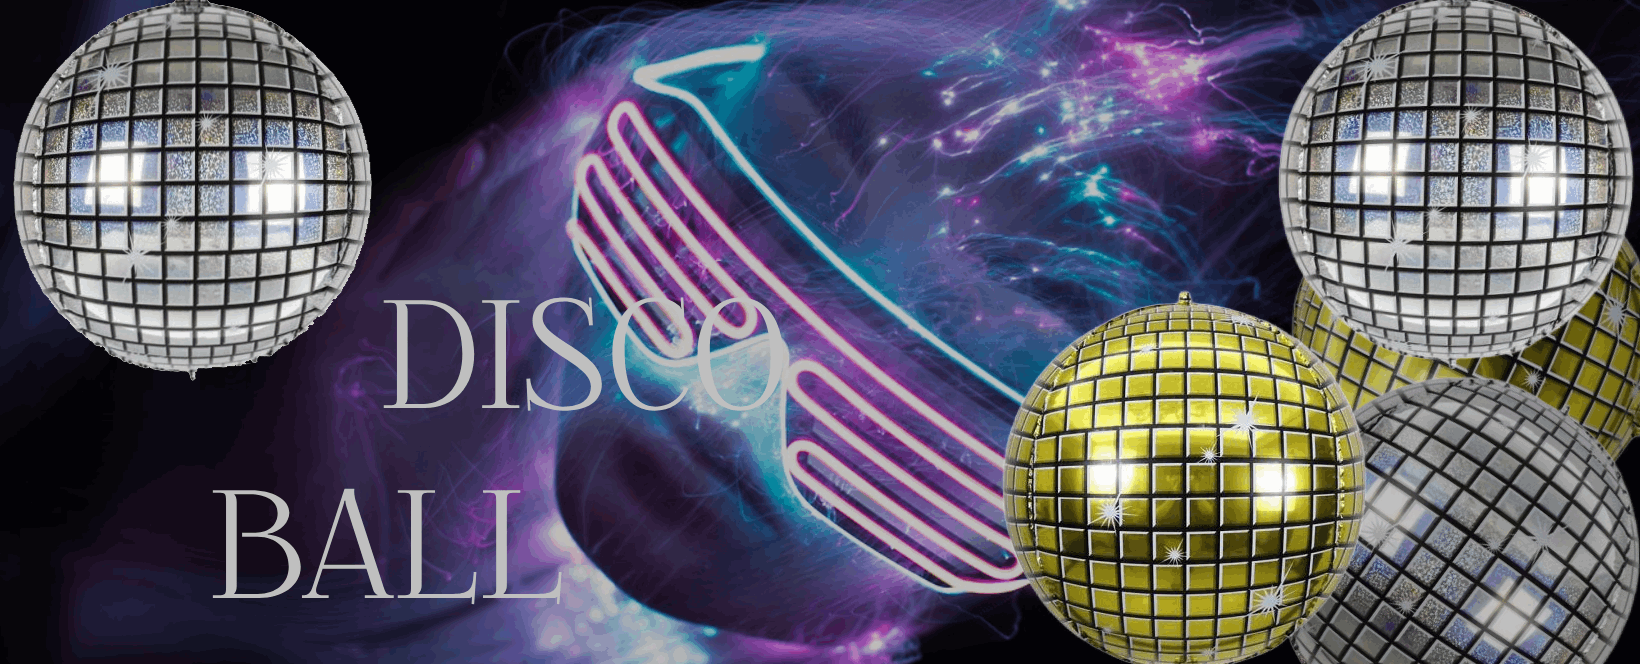 banner_disco_ball